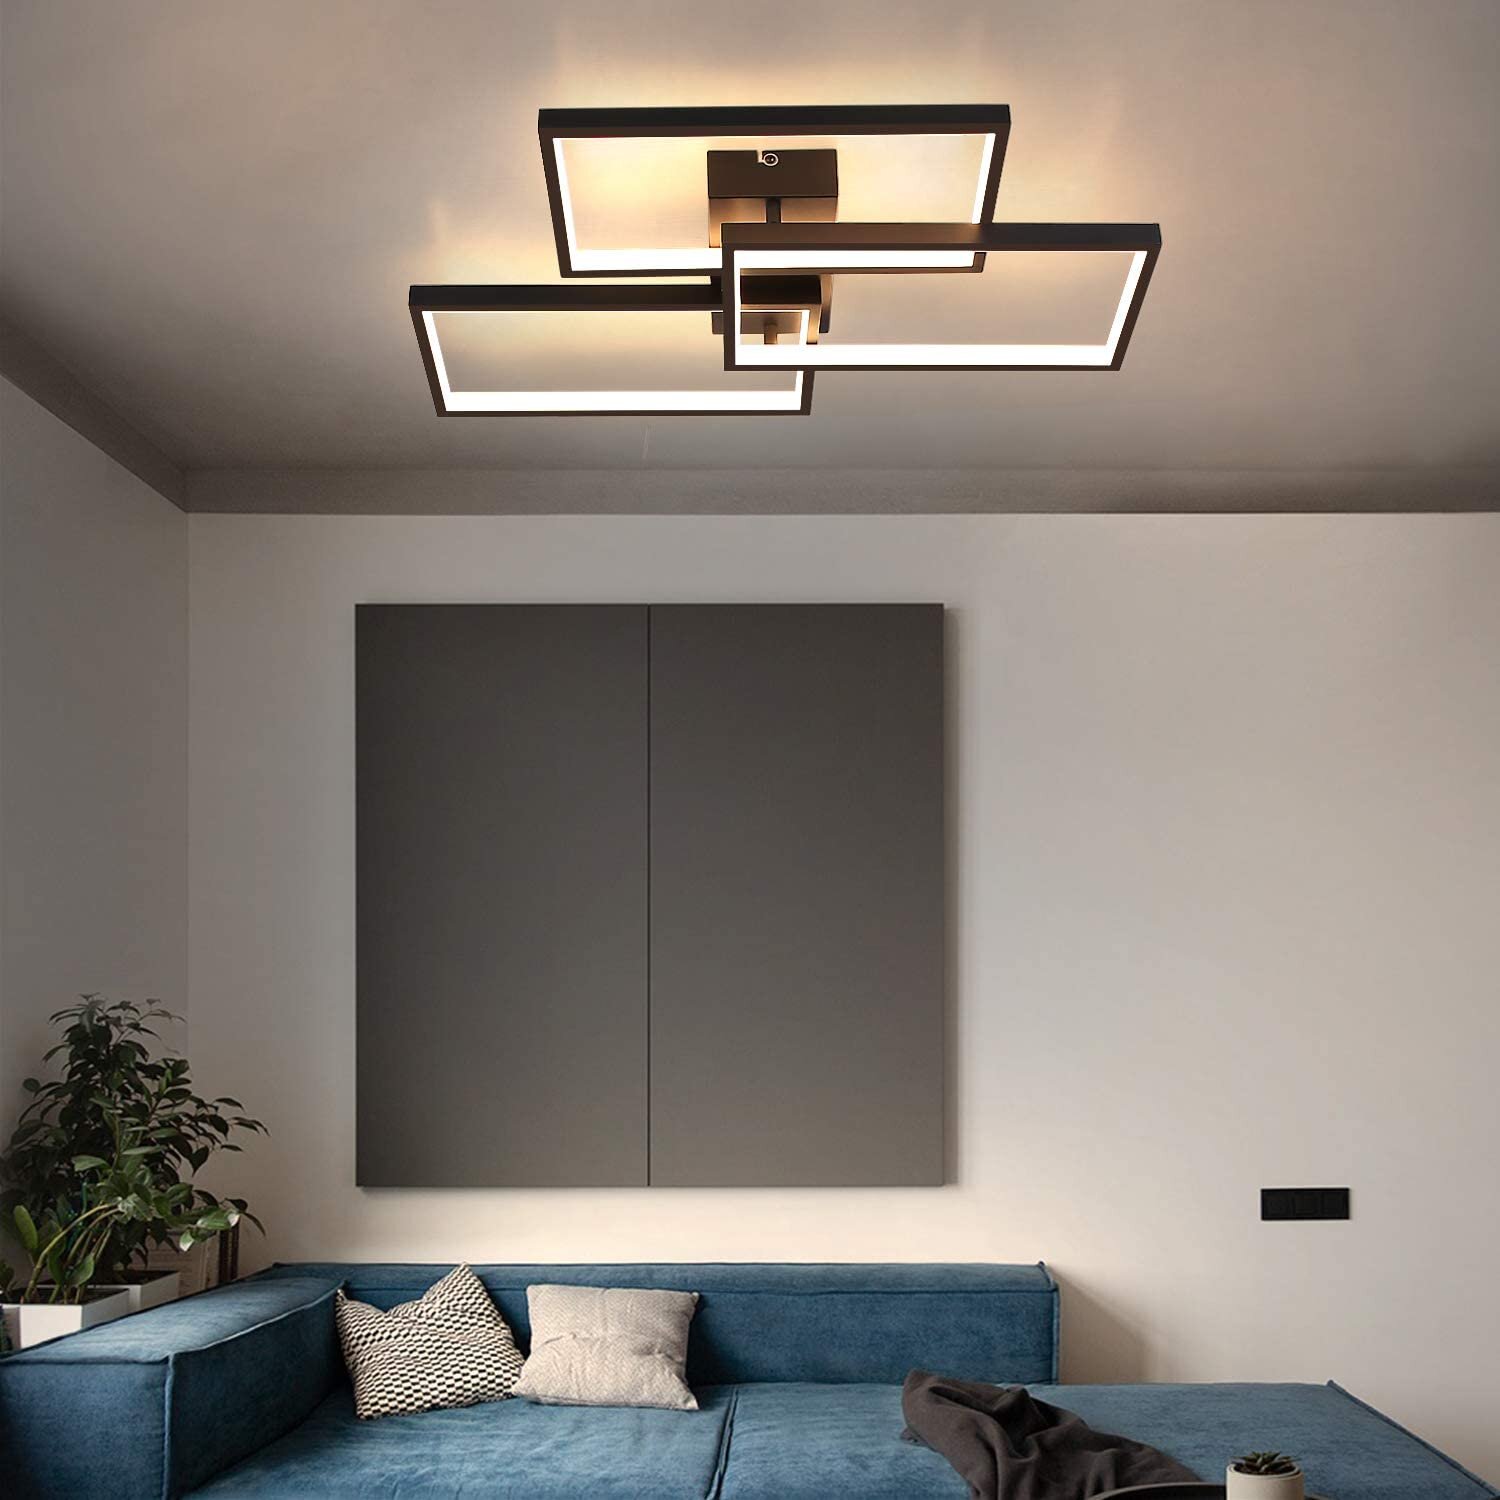 Design LED Decken Lampe Leuchte Chrom Glas Beleuchtung Wohn Schlaf Zimmer Diele 